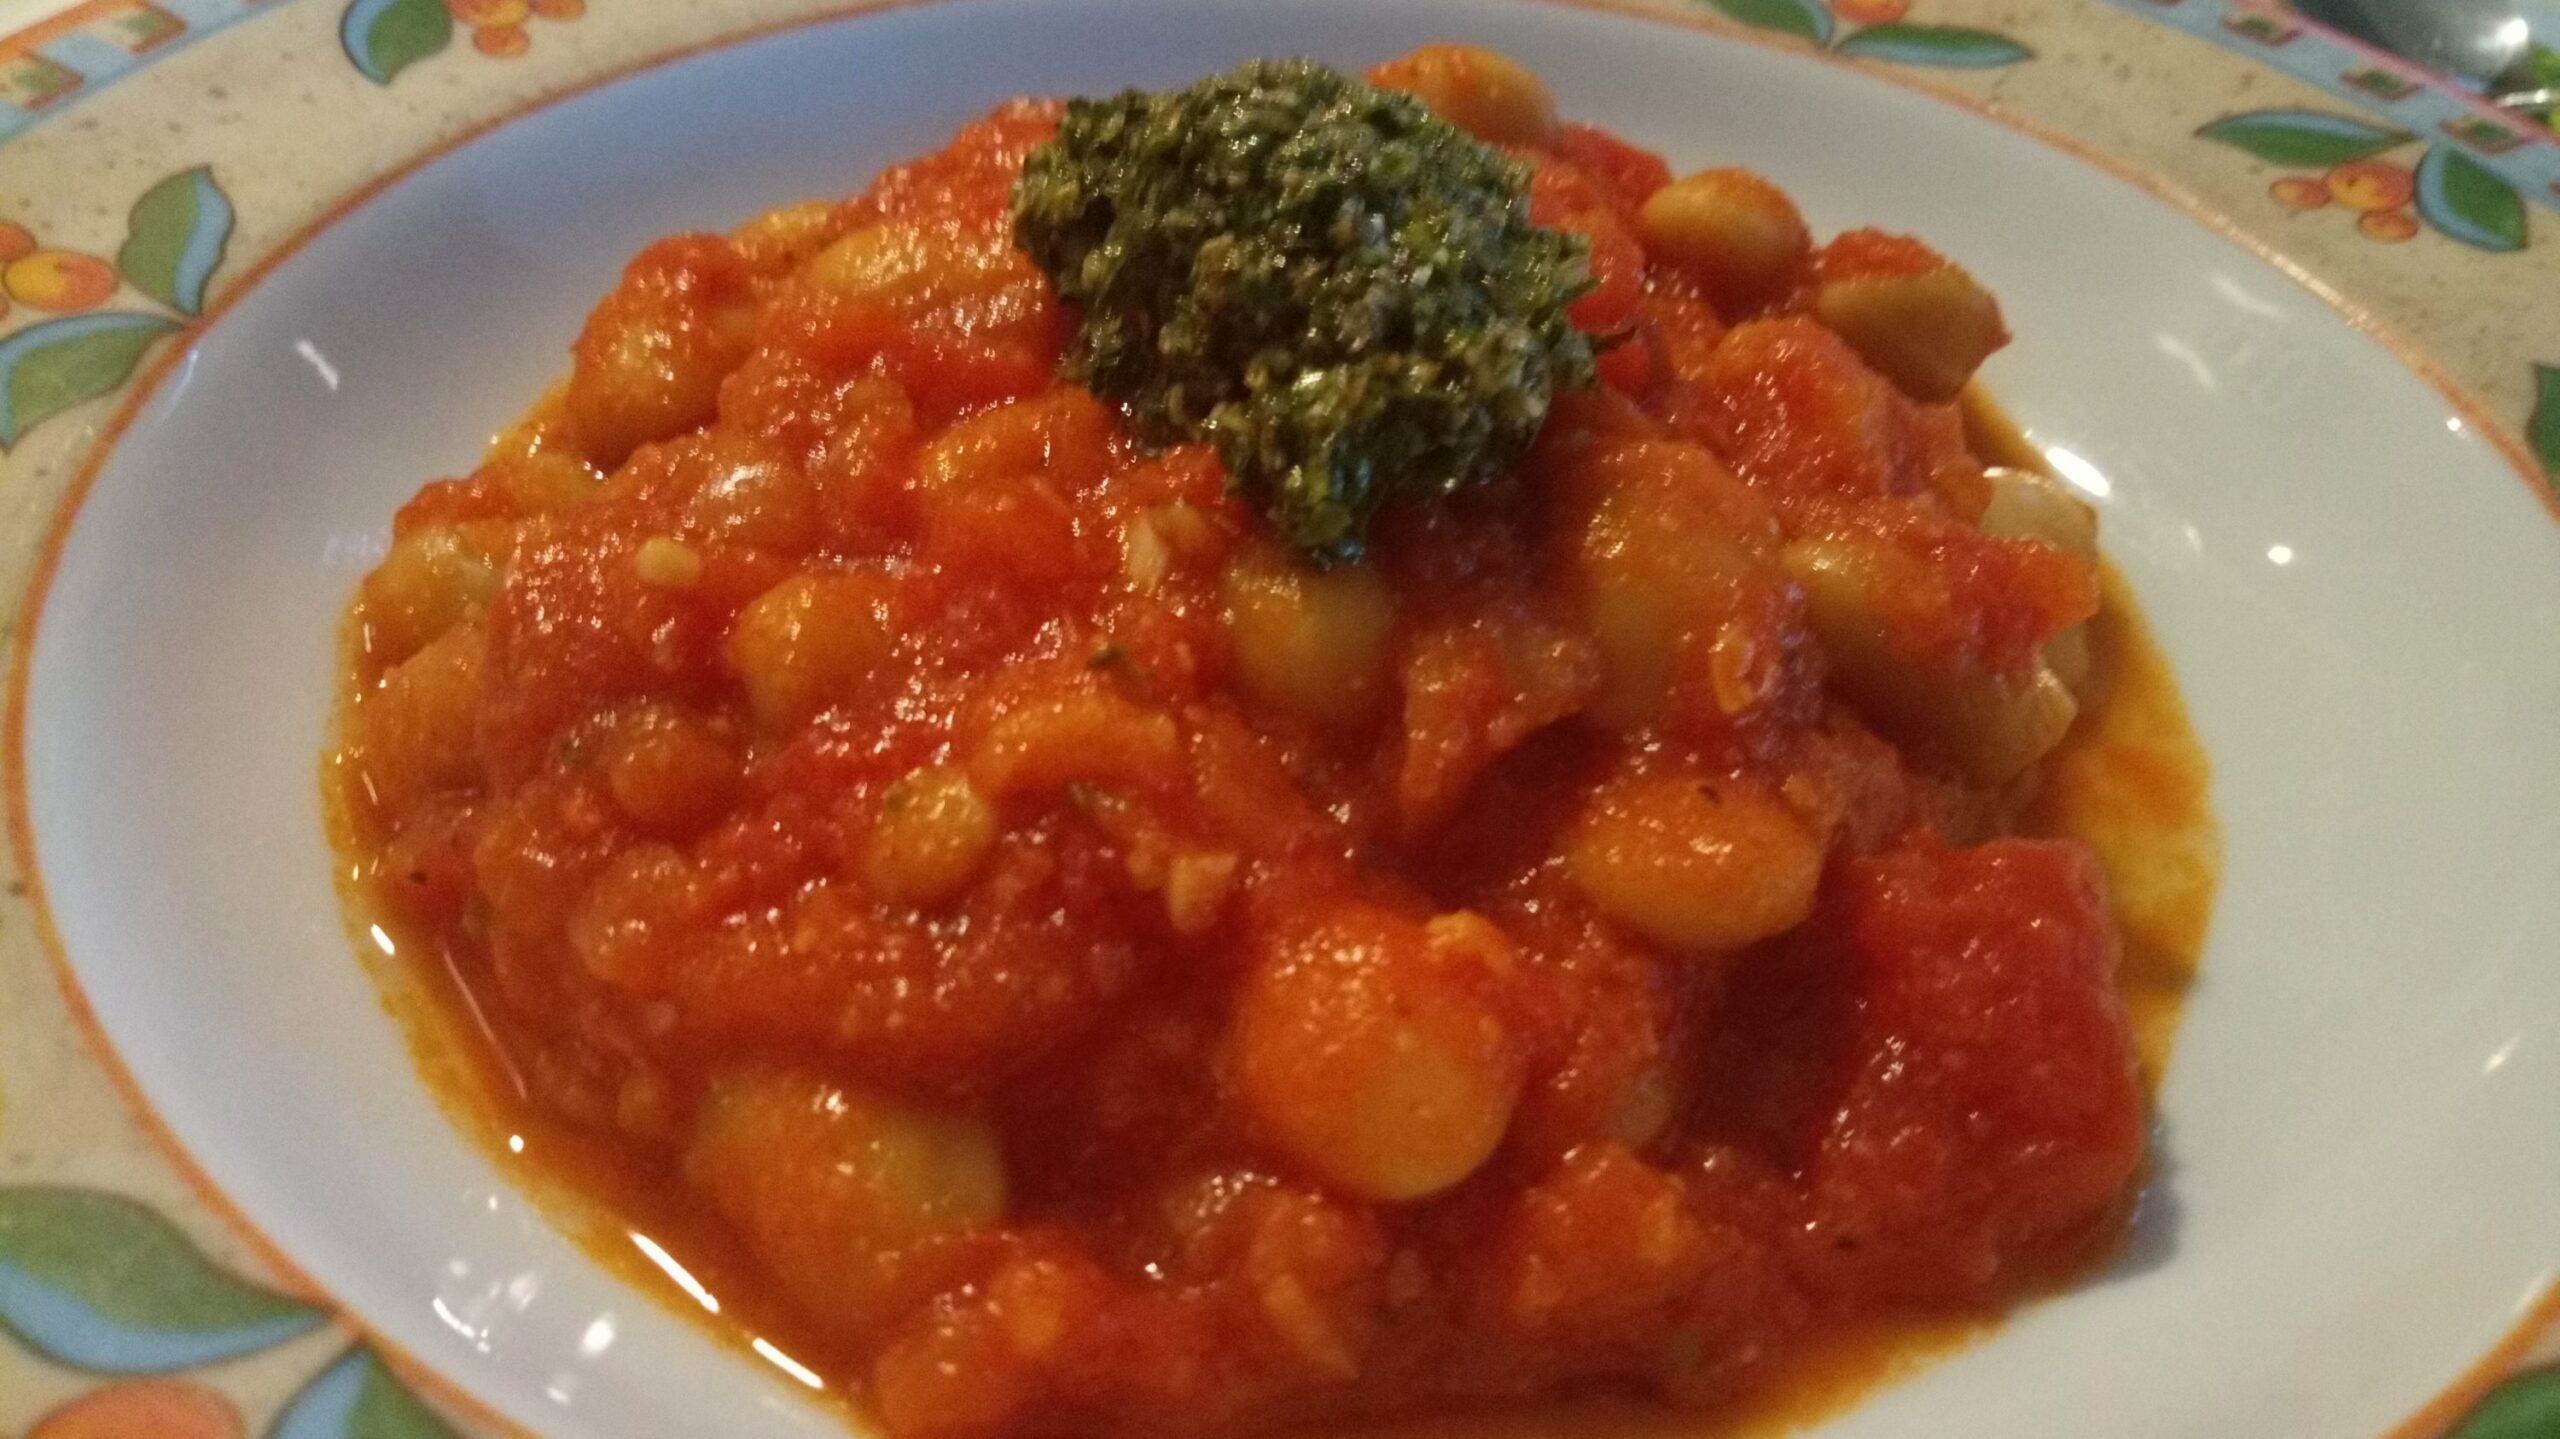 Bohnen Tomaten Eintopf mit Pesto | Essen Tagebuch mit Bild | Mampf-mit